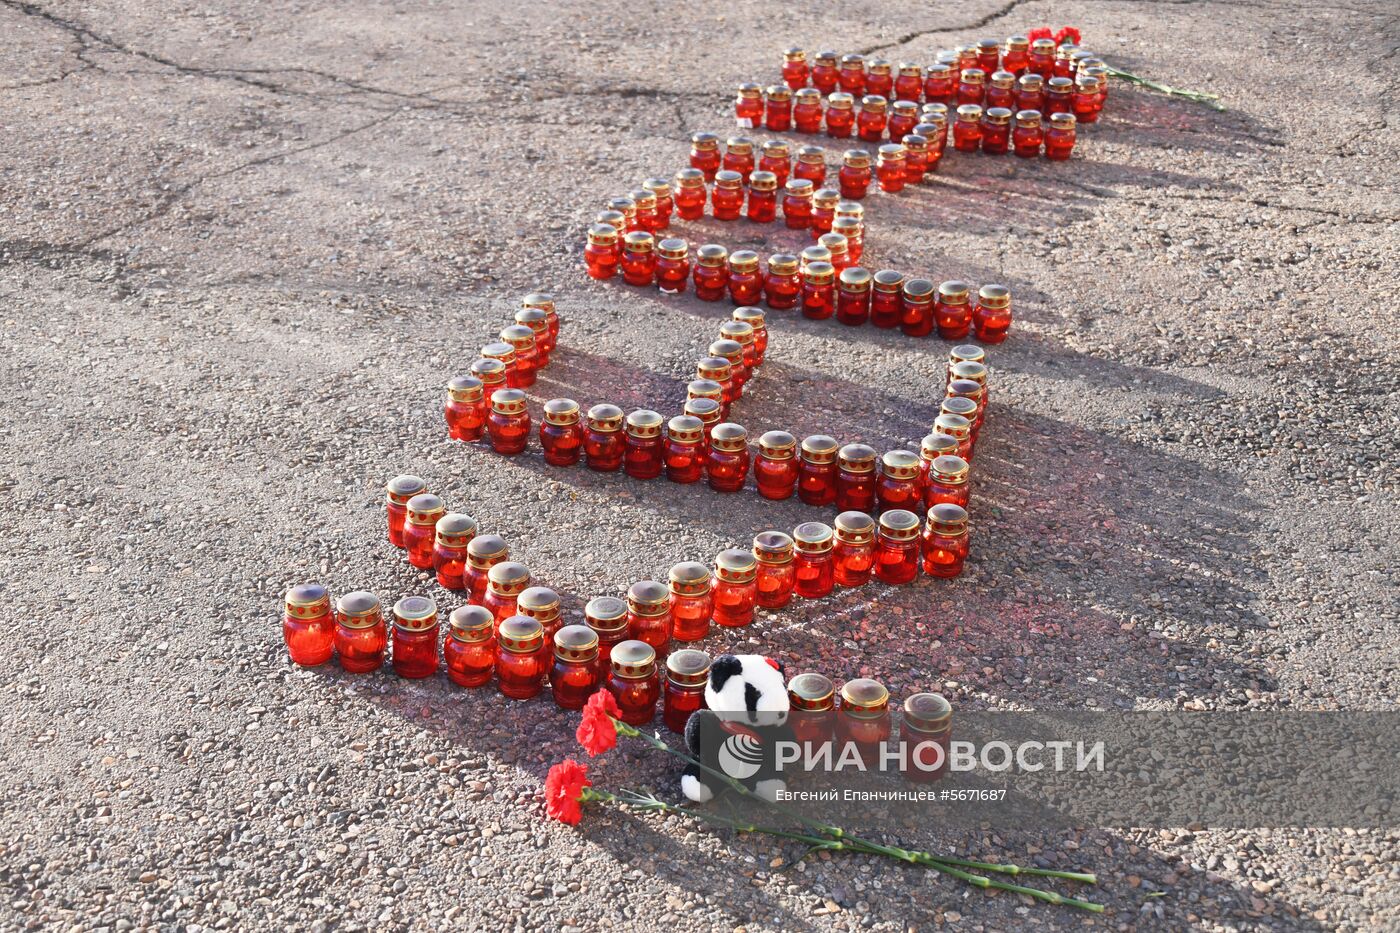 Акции памяти погибших при нападении на керченский колледж